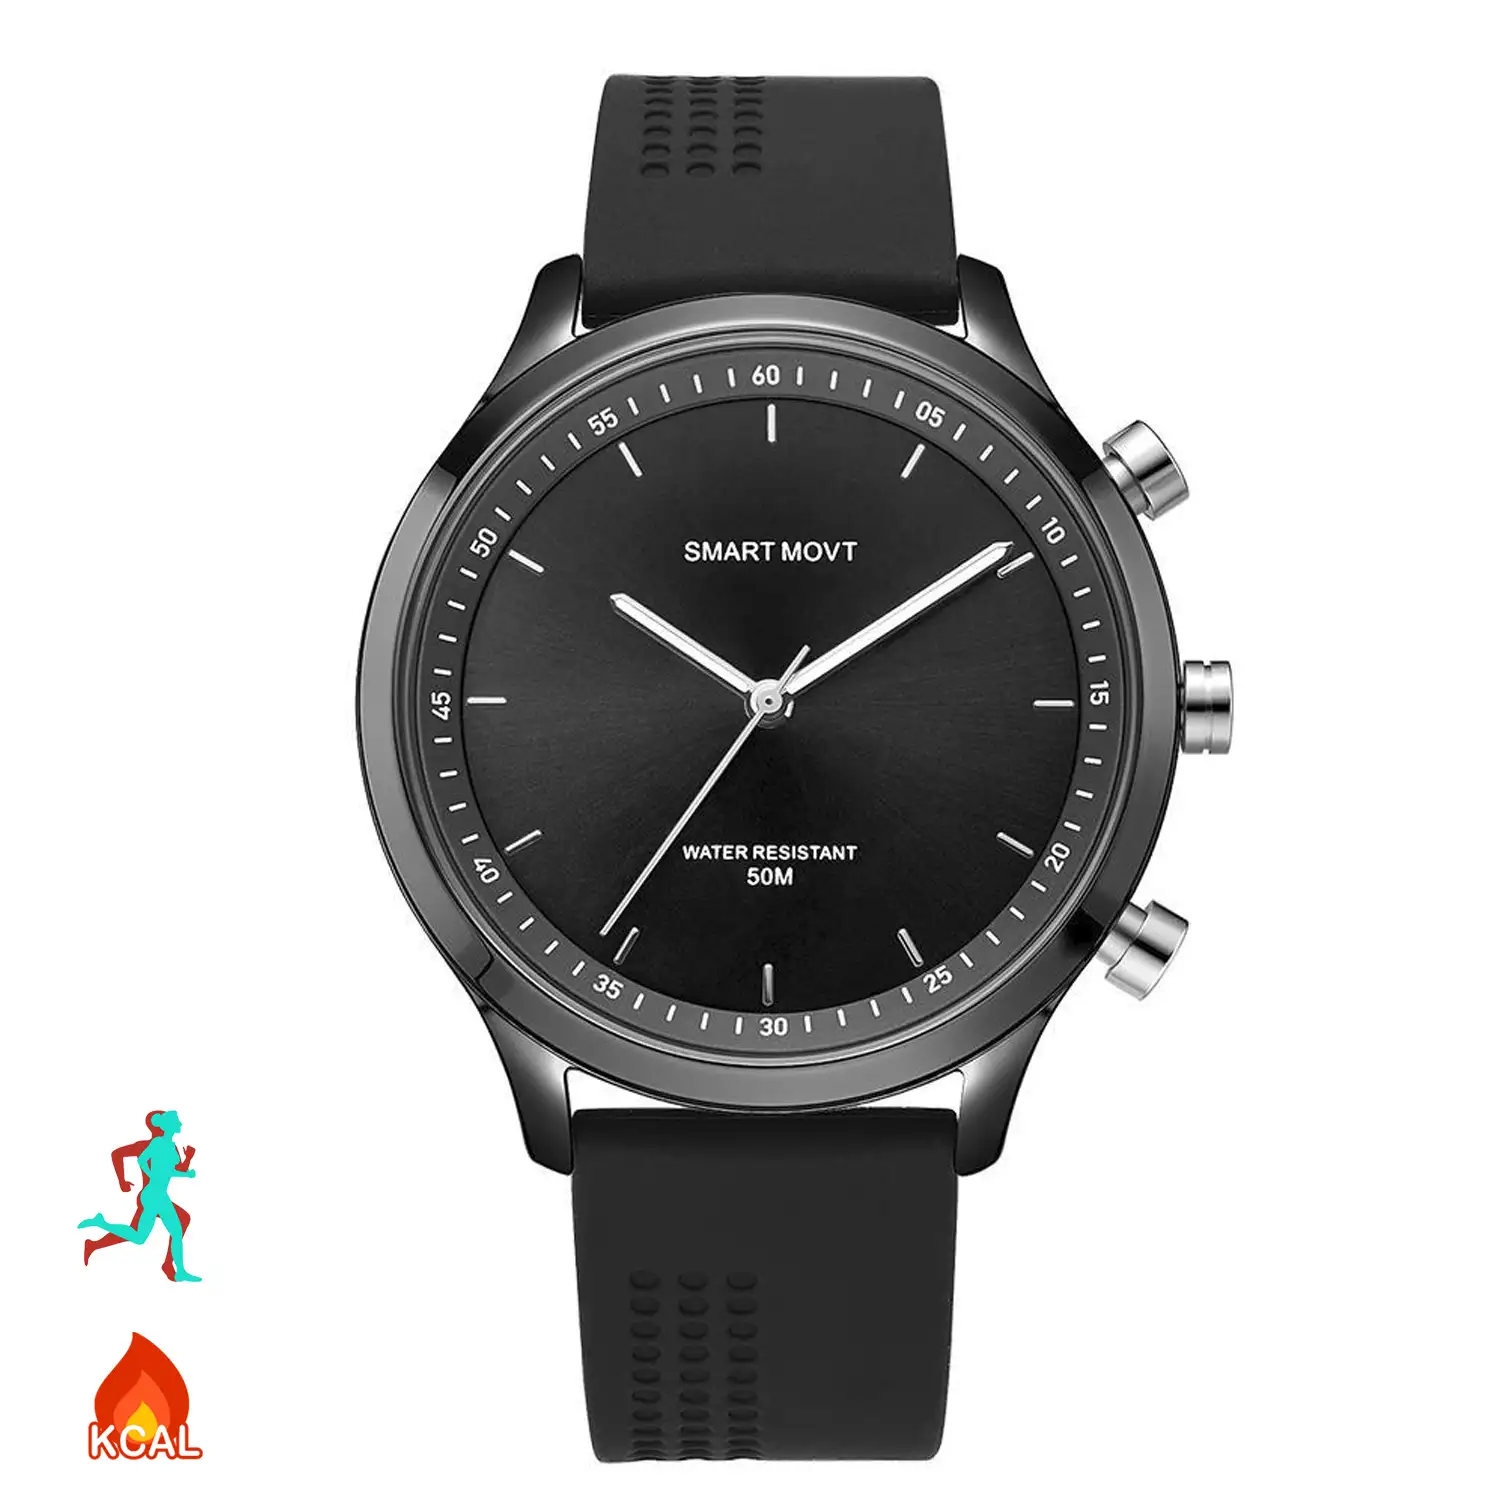 Smartwatch NX05 movimiento de cuarzo analógico, podómetro, aviso de llamadas y SMS